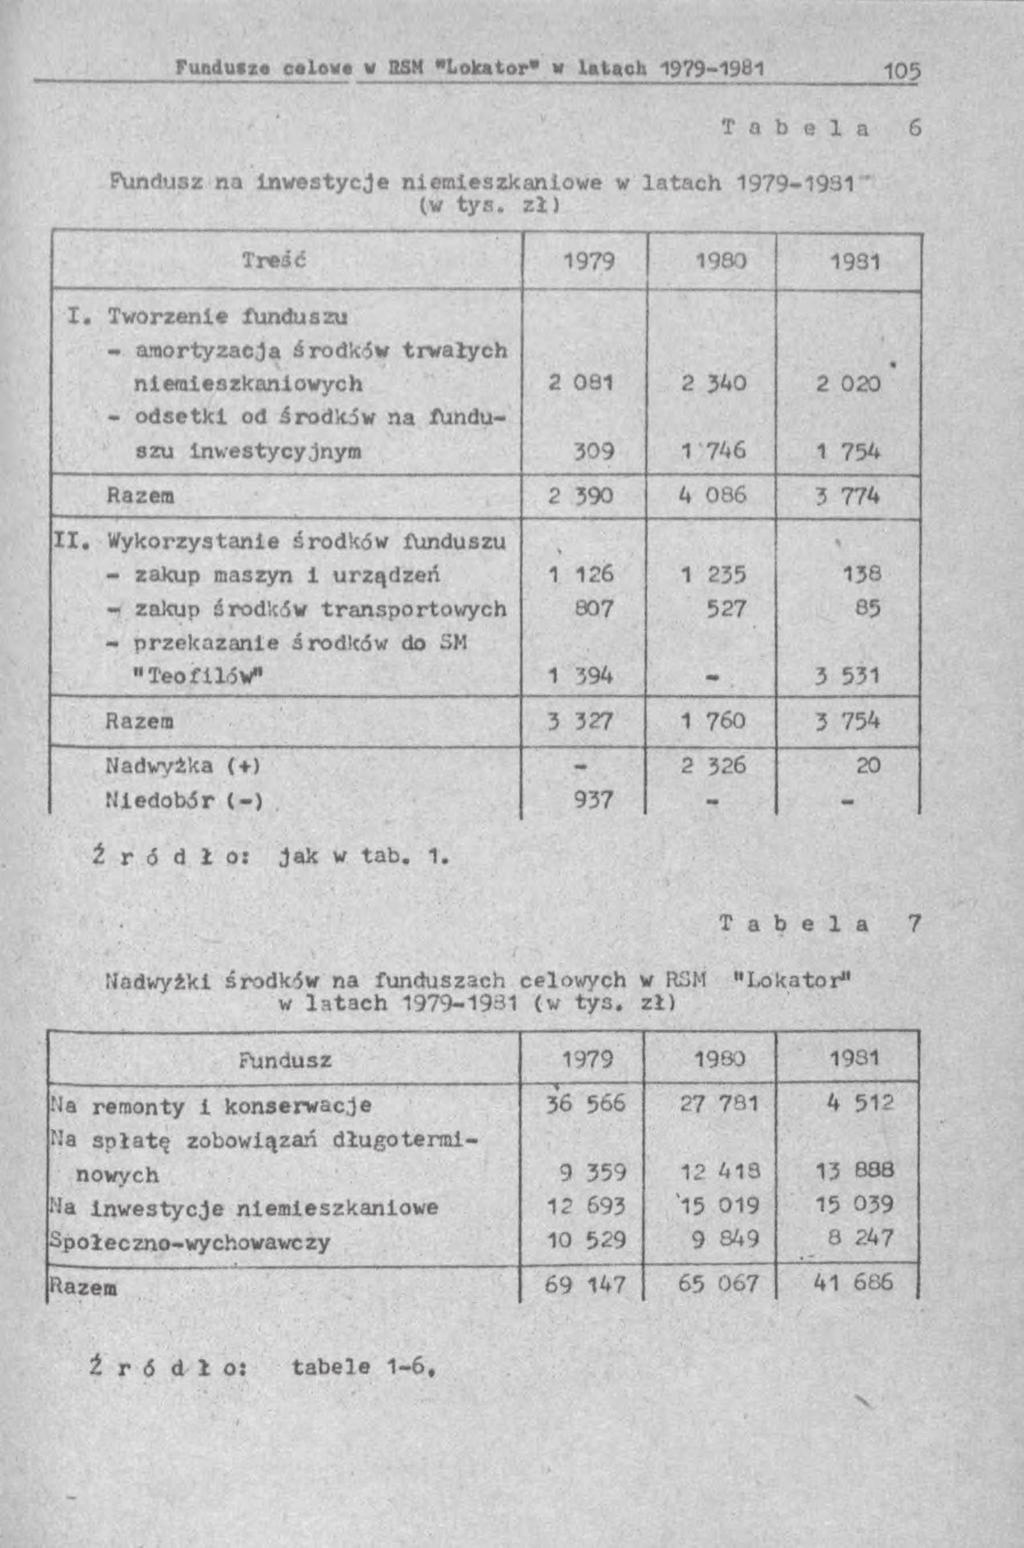 Fundusz na inw estycje niemieszkaniowe w la ta c h 1979-1931 ' (w ty s. z ł) Treść 1979 1980 1931 I.